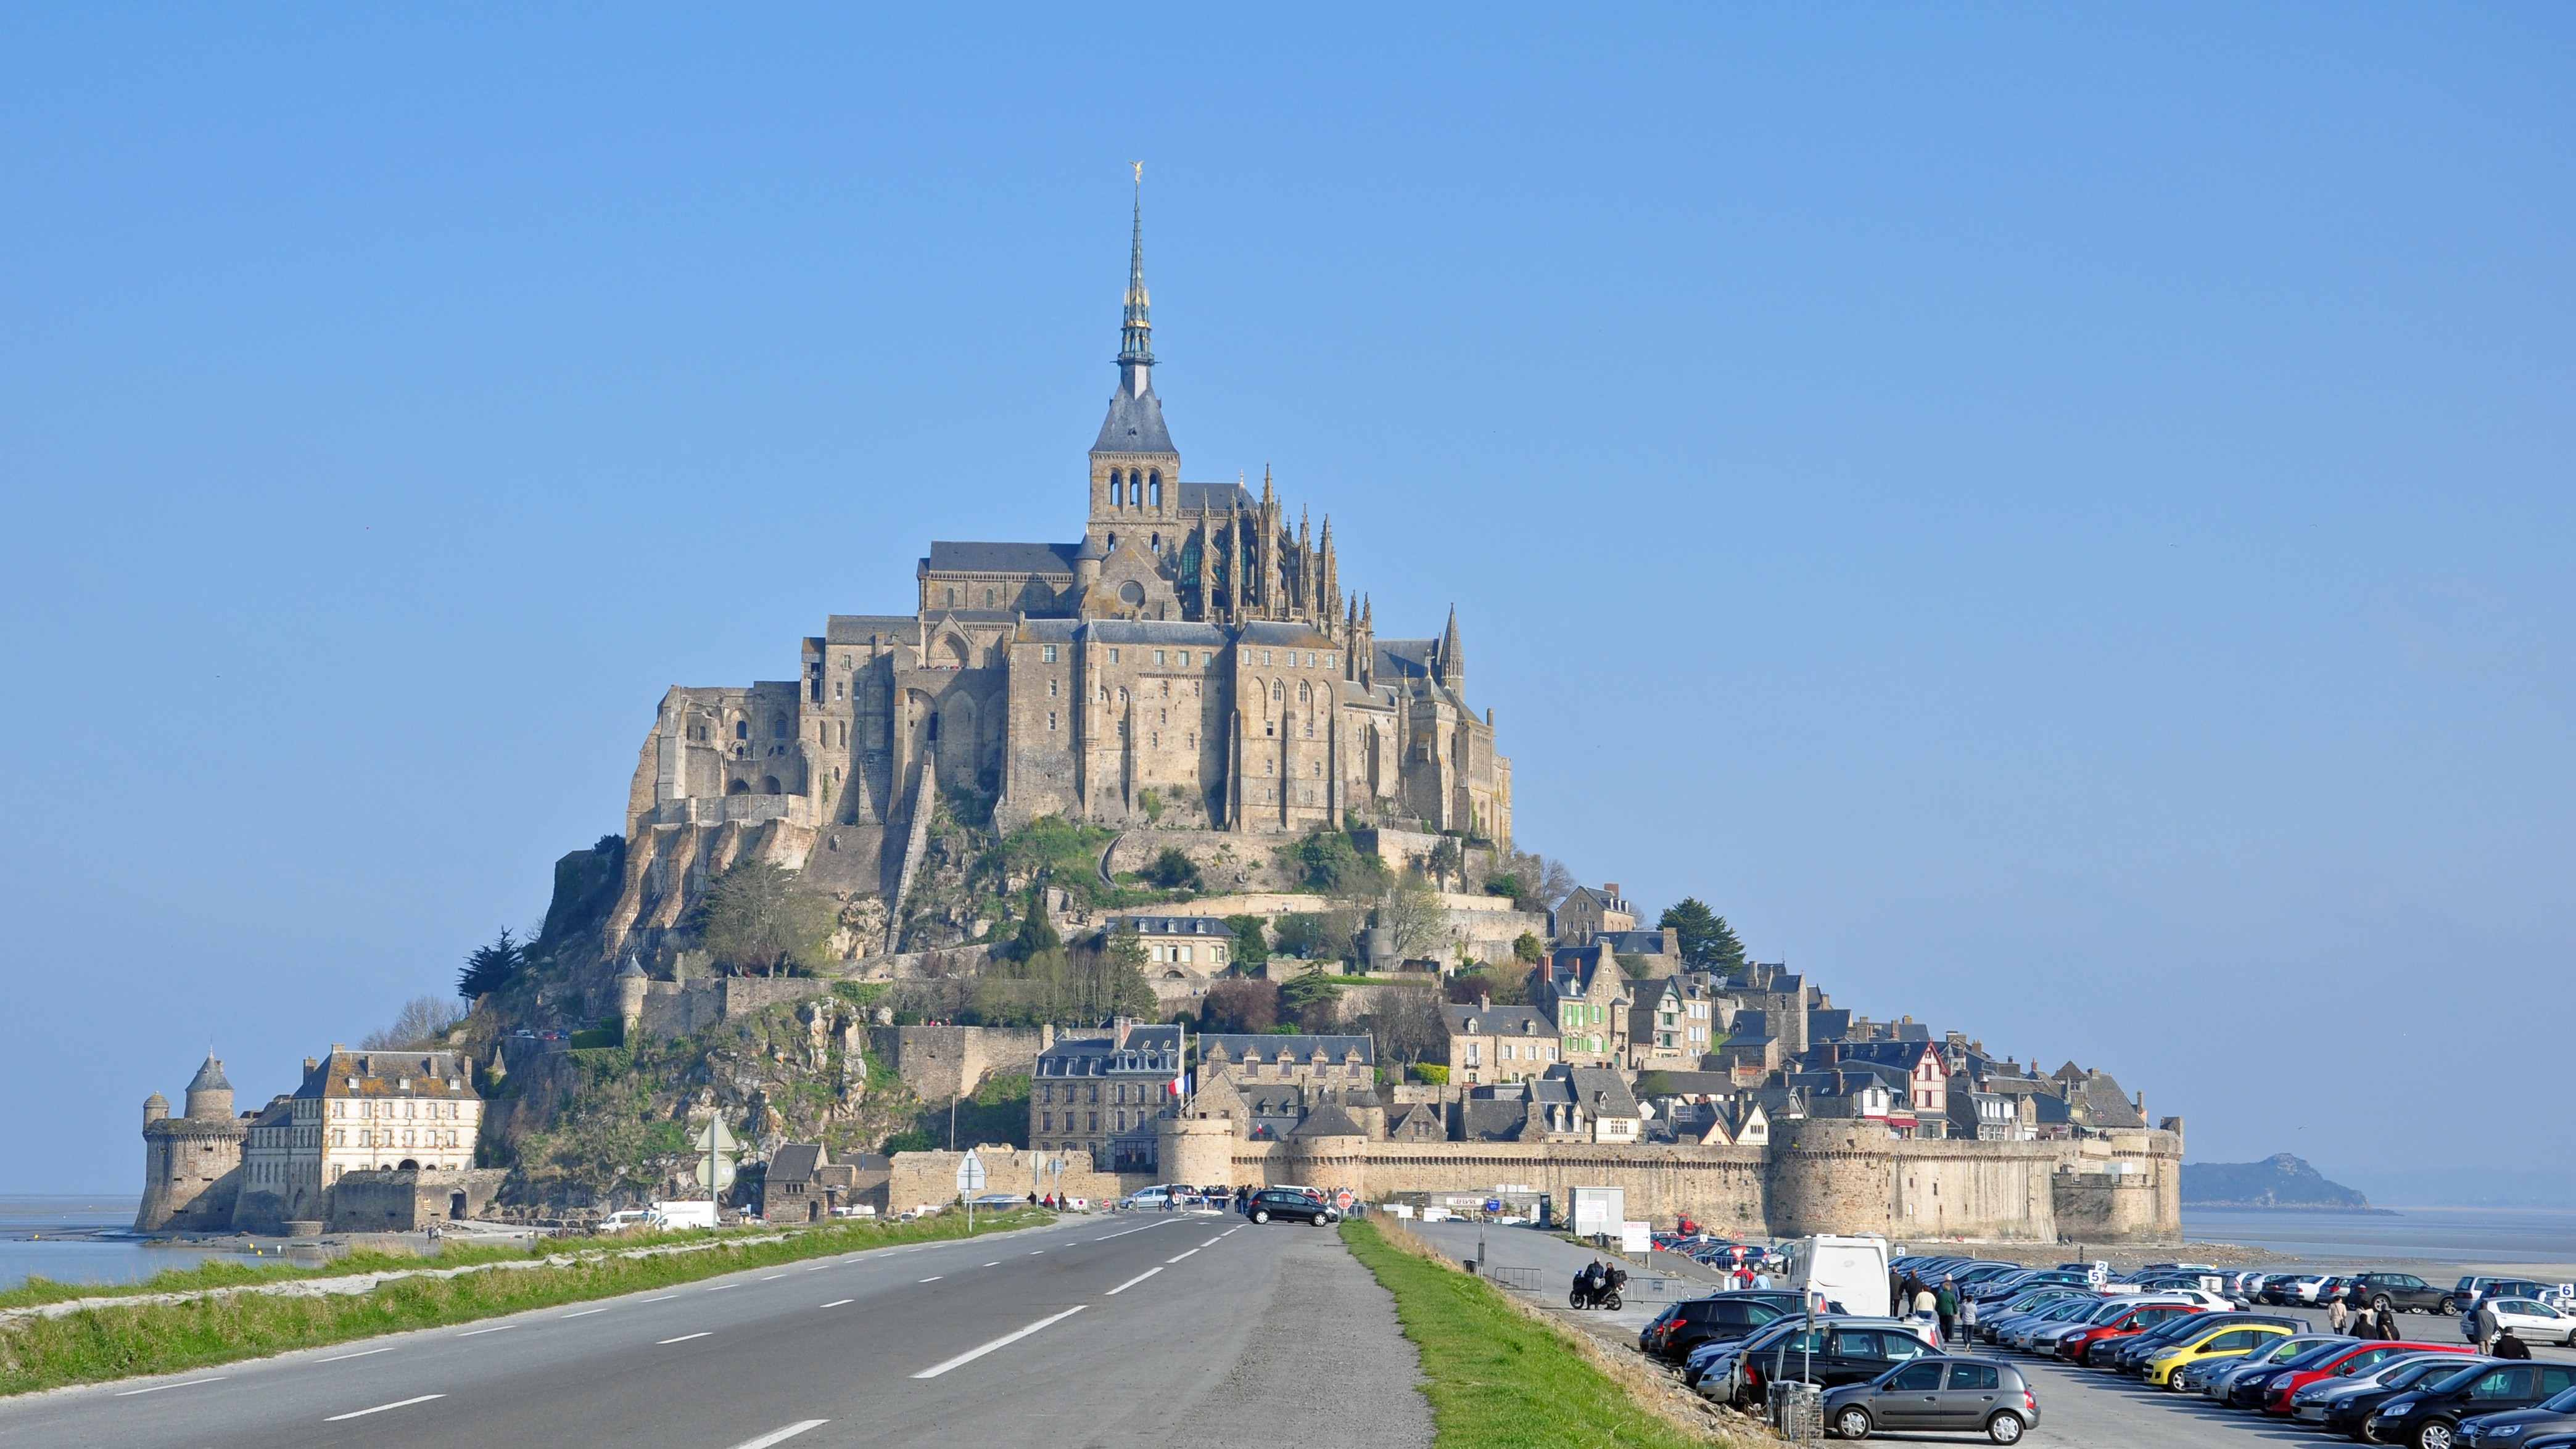 Mont Saint Michel Architecture Abbey Island Cityscape France 4176x2349